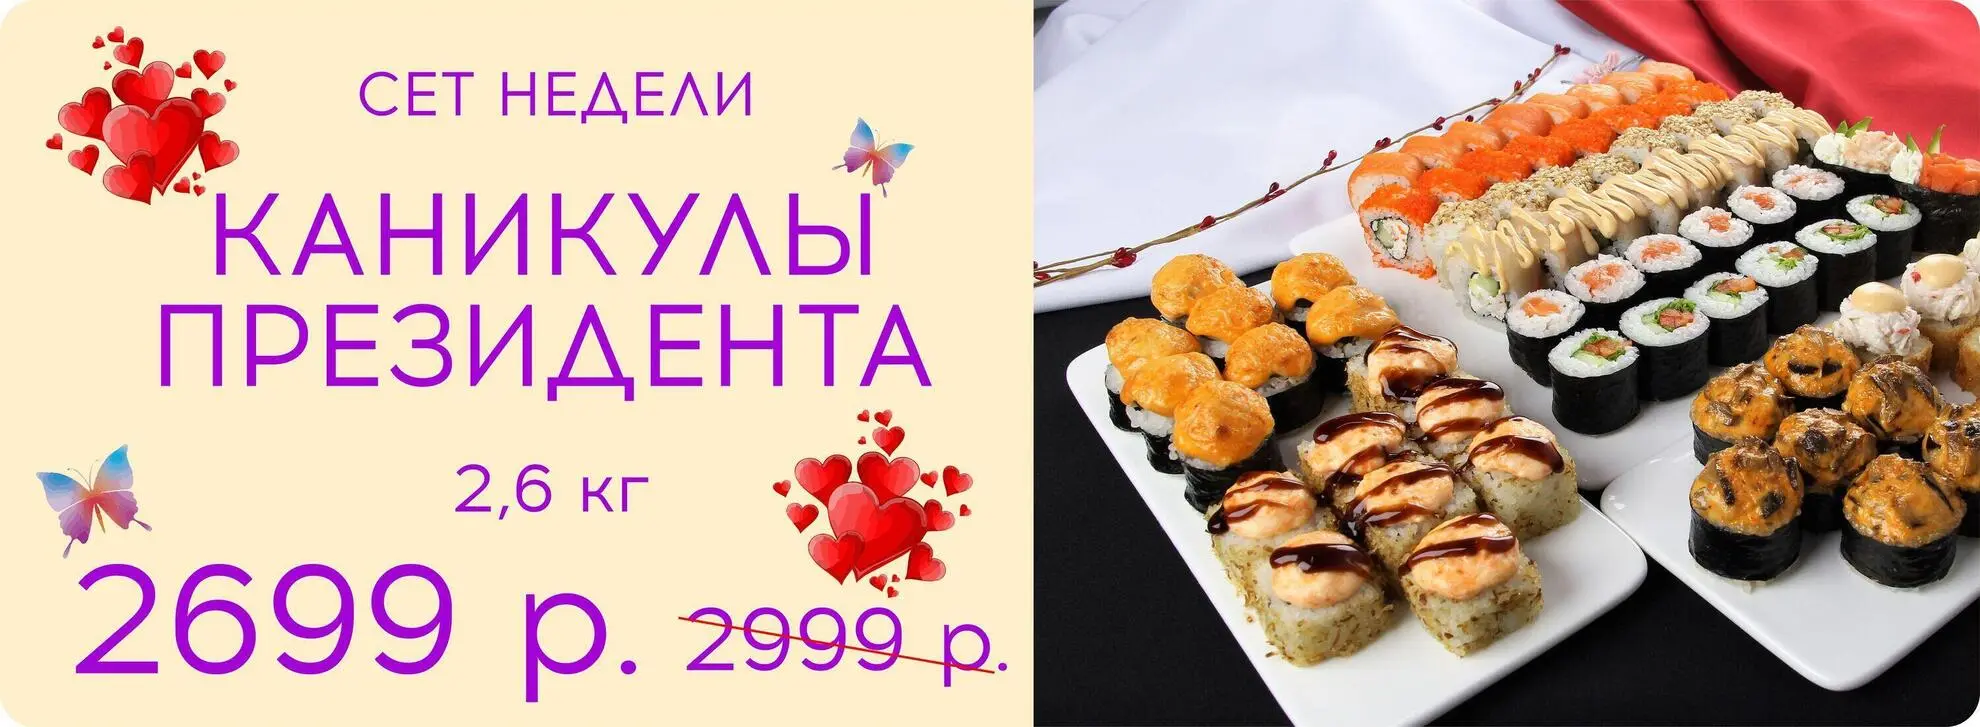 slide-https://kushi-sushi.ru/menu/137263/852169